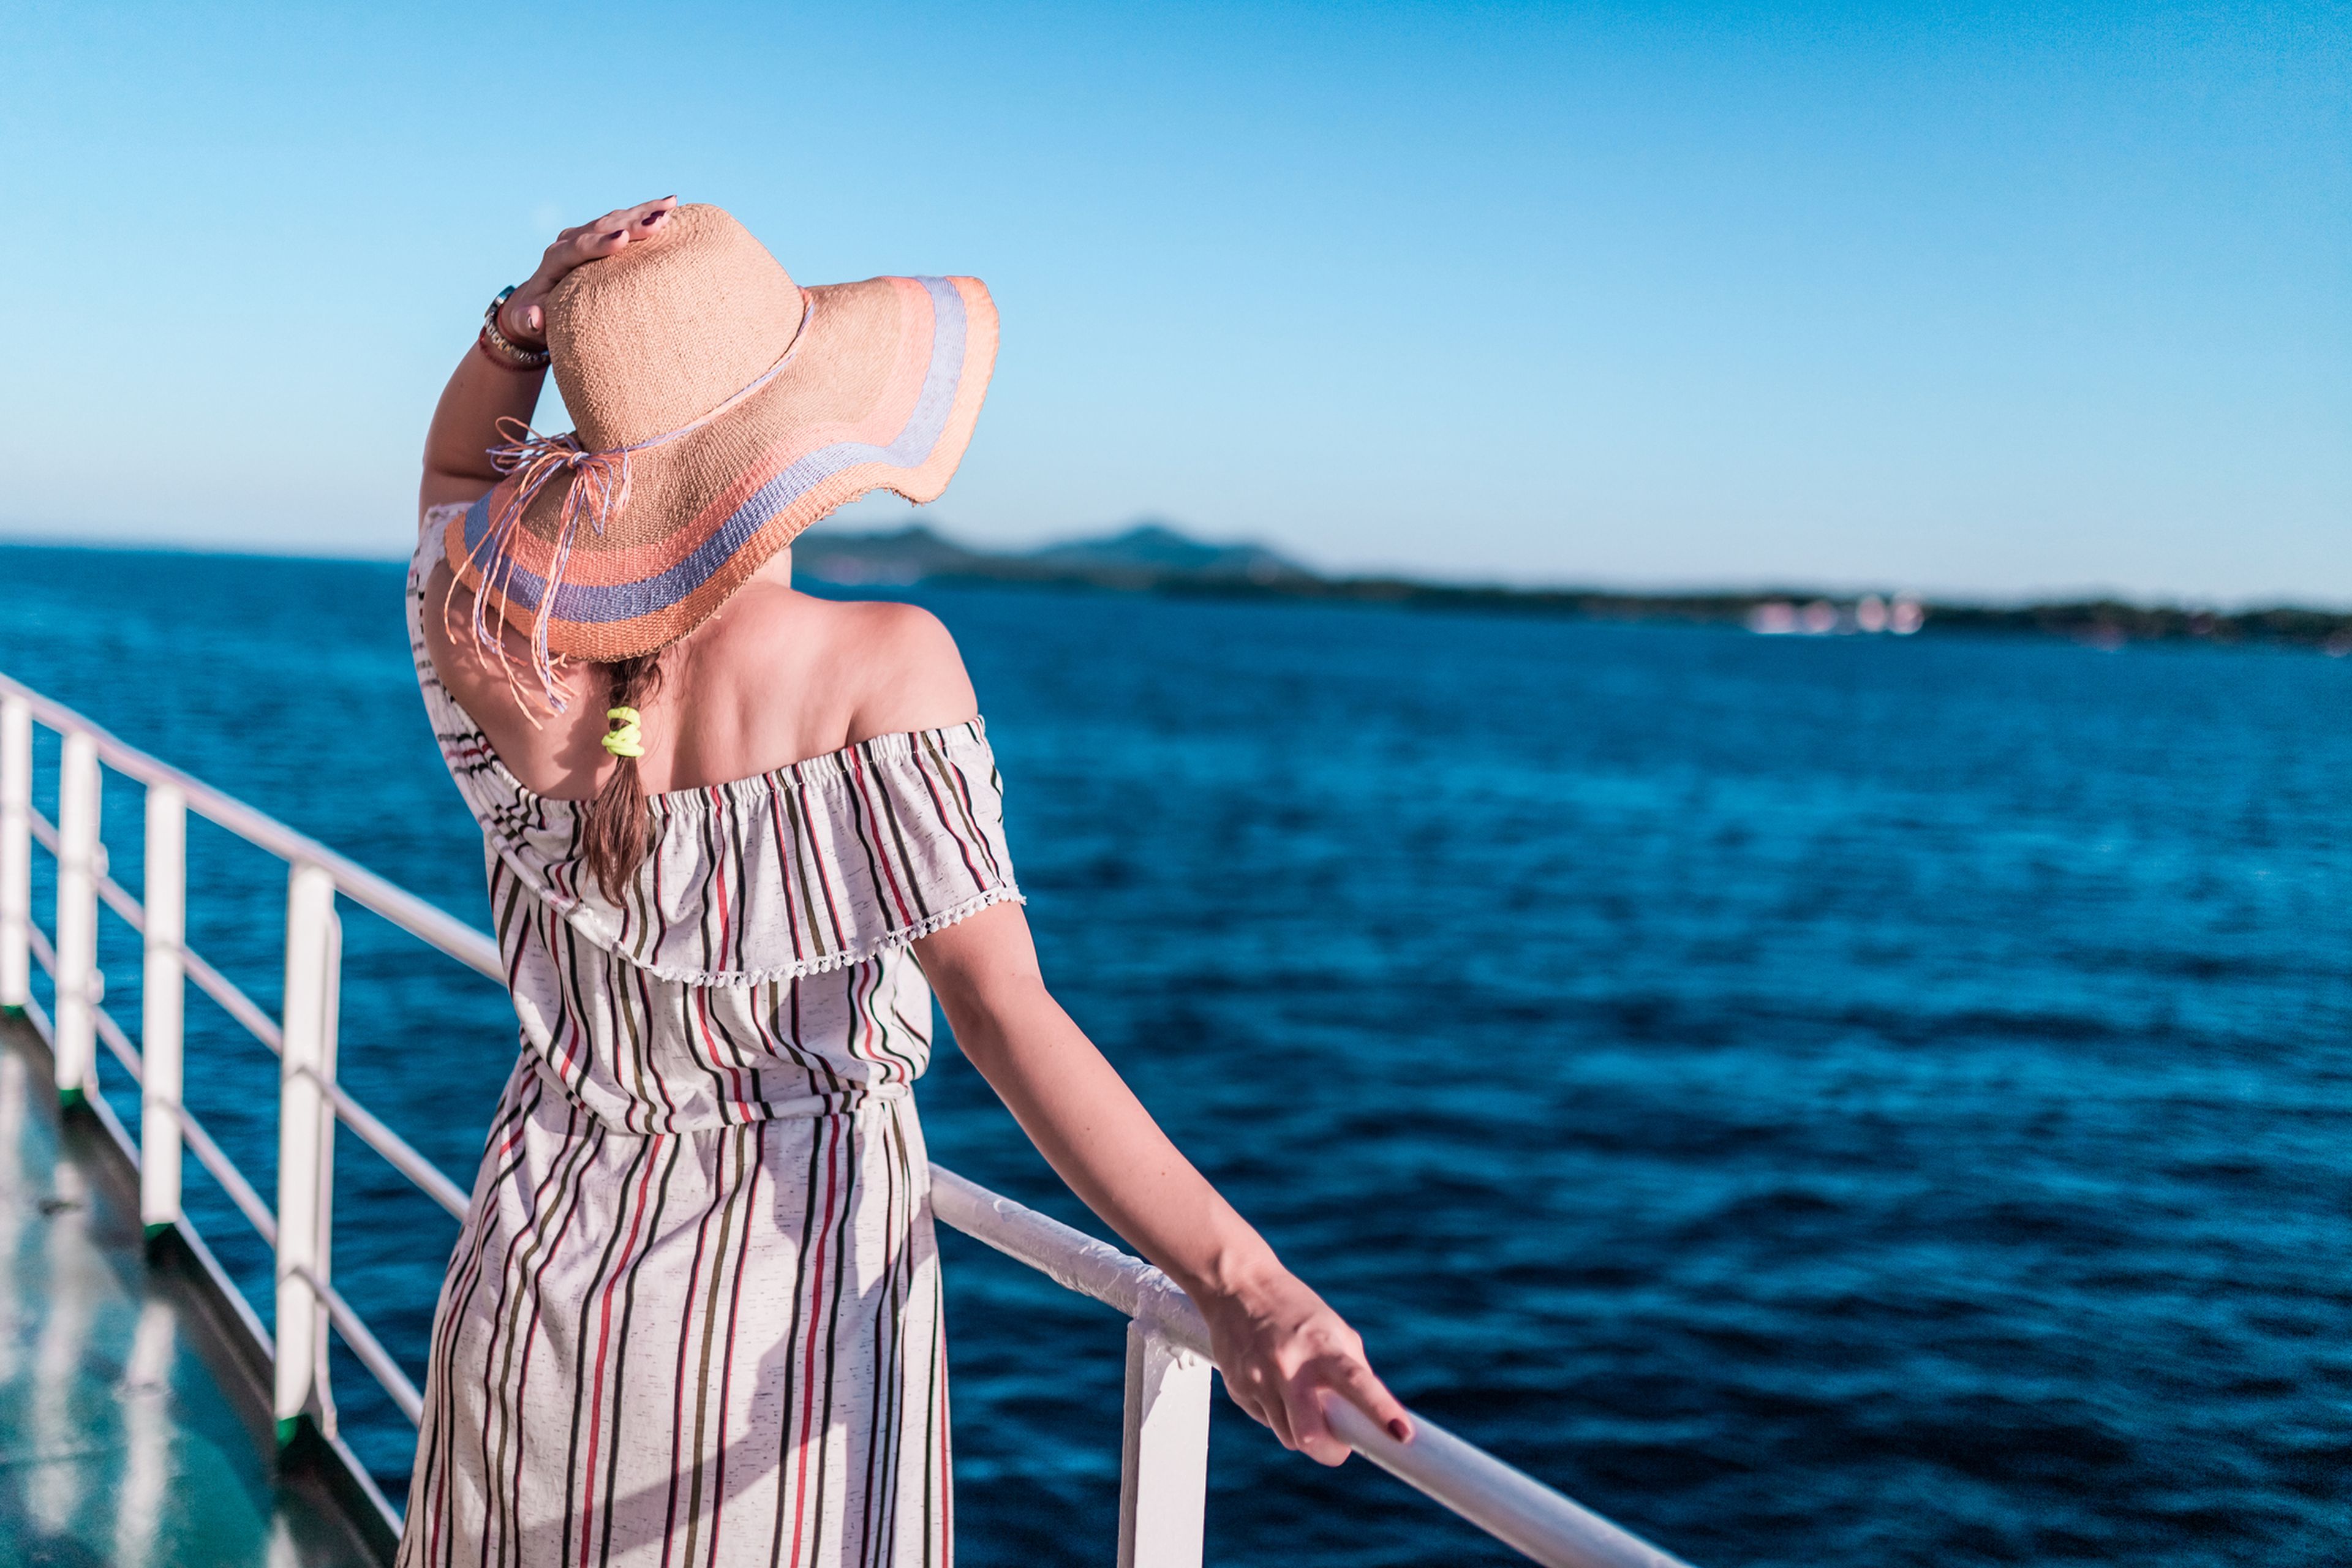 Mujer en un crucero mirando el mar